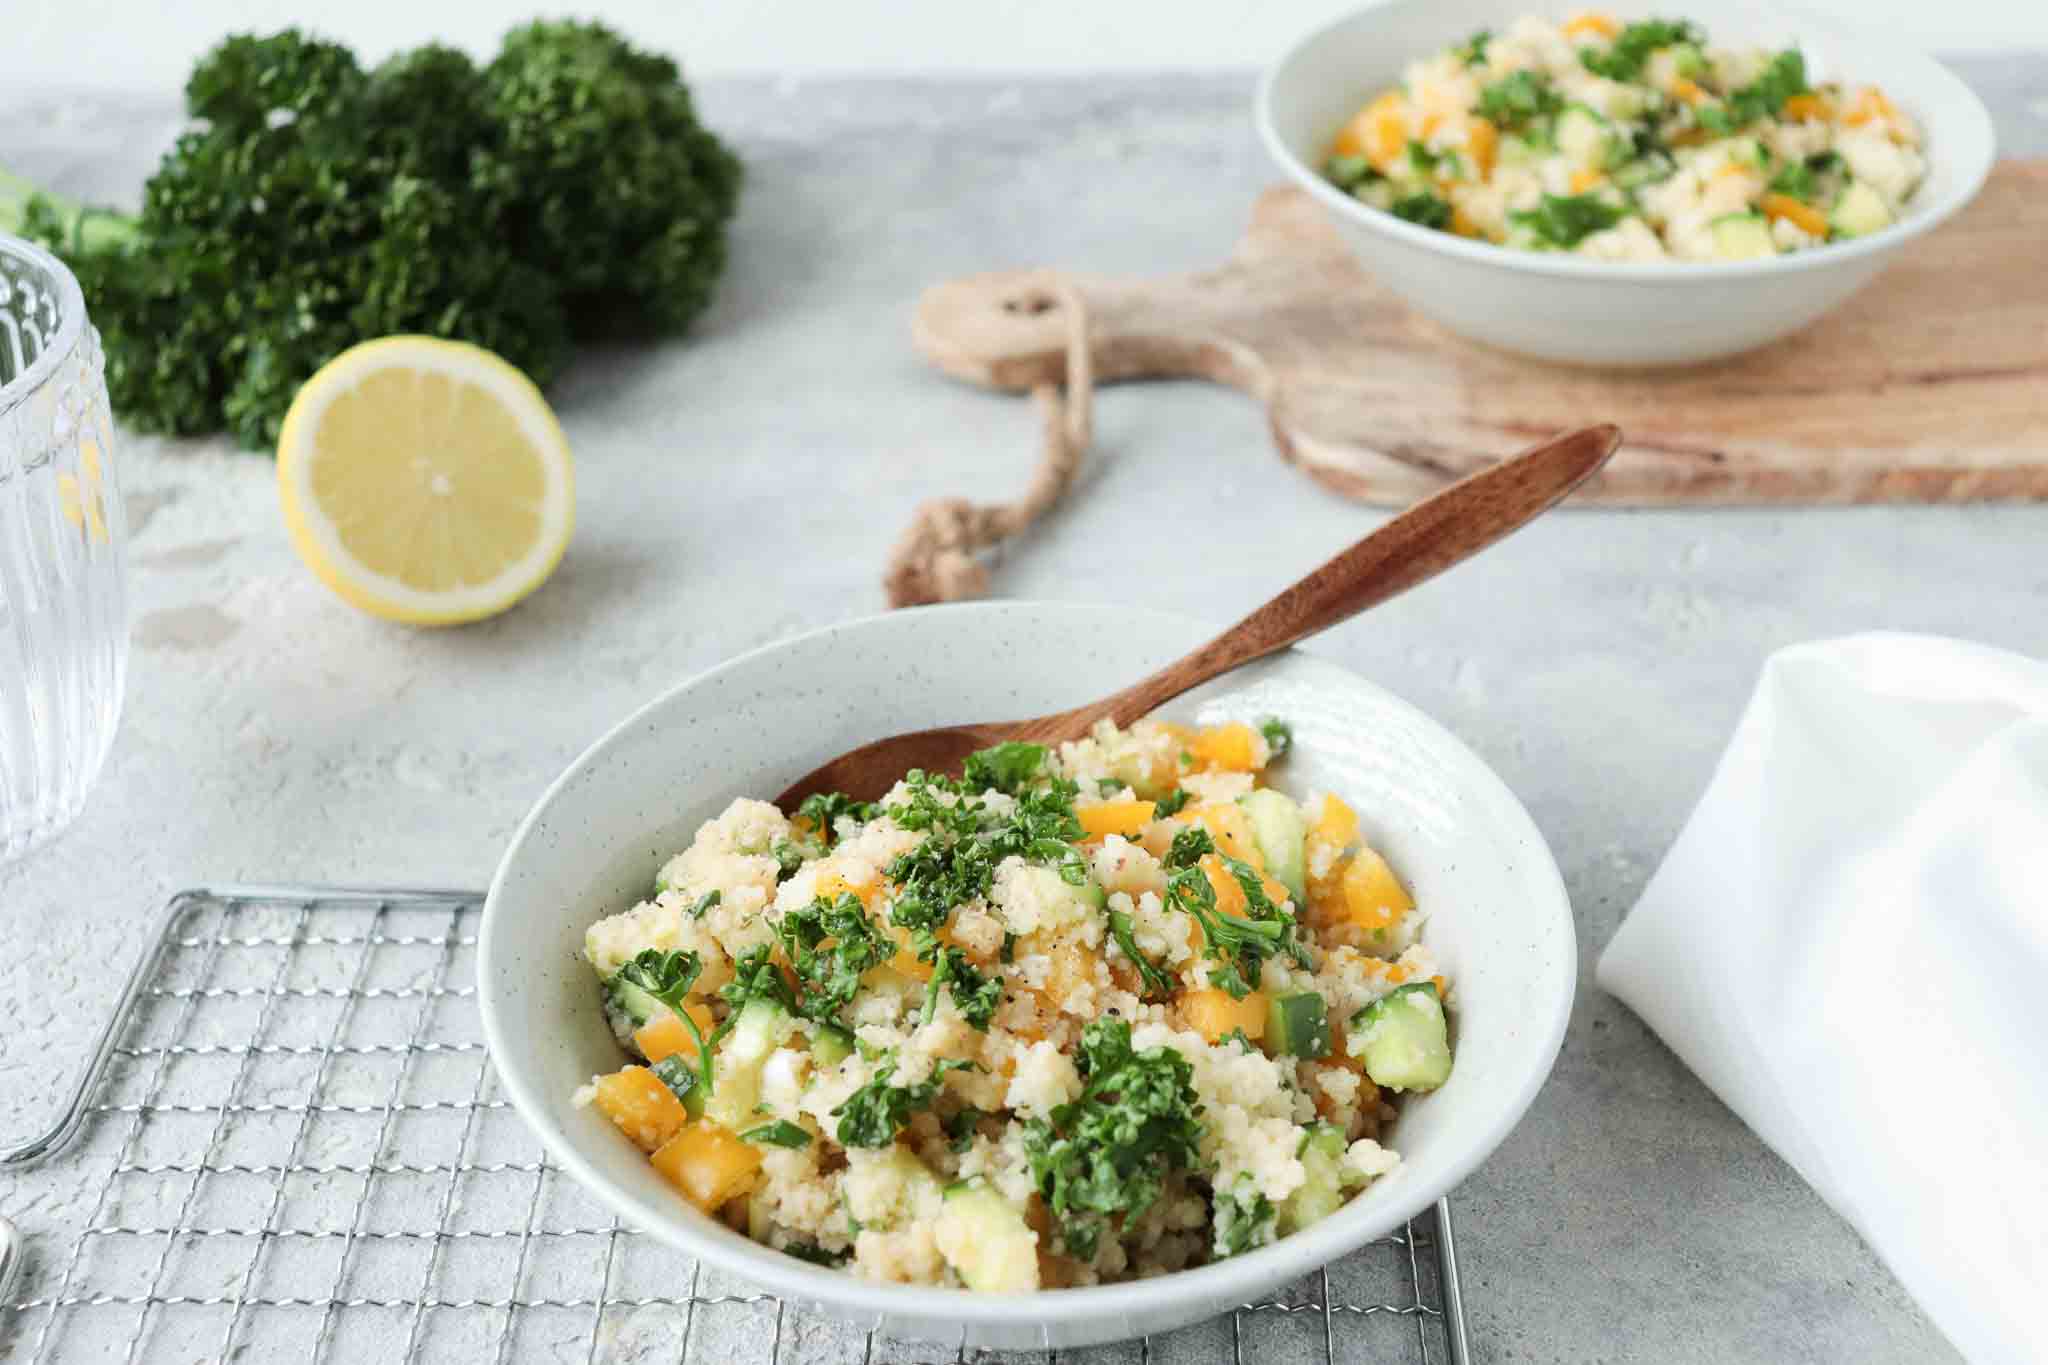 Couscous Salat Rezept – einfach und schnell